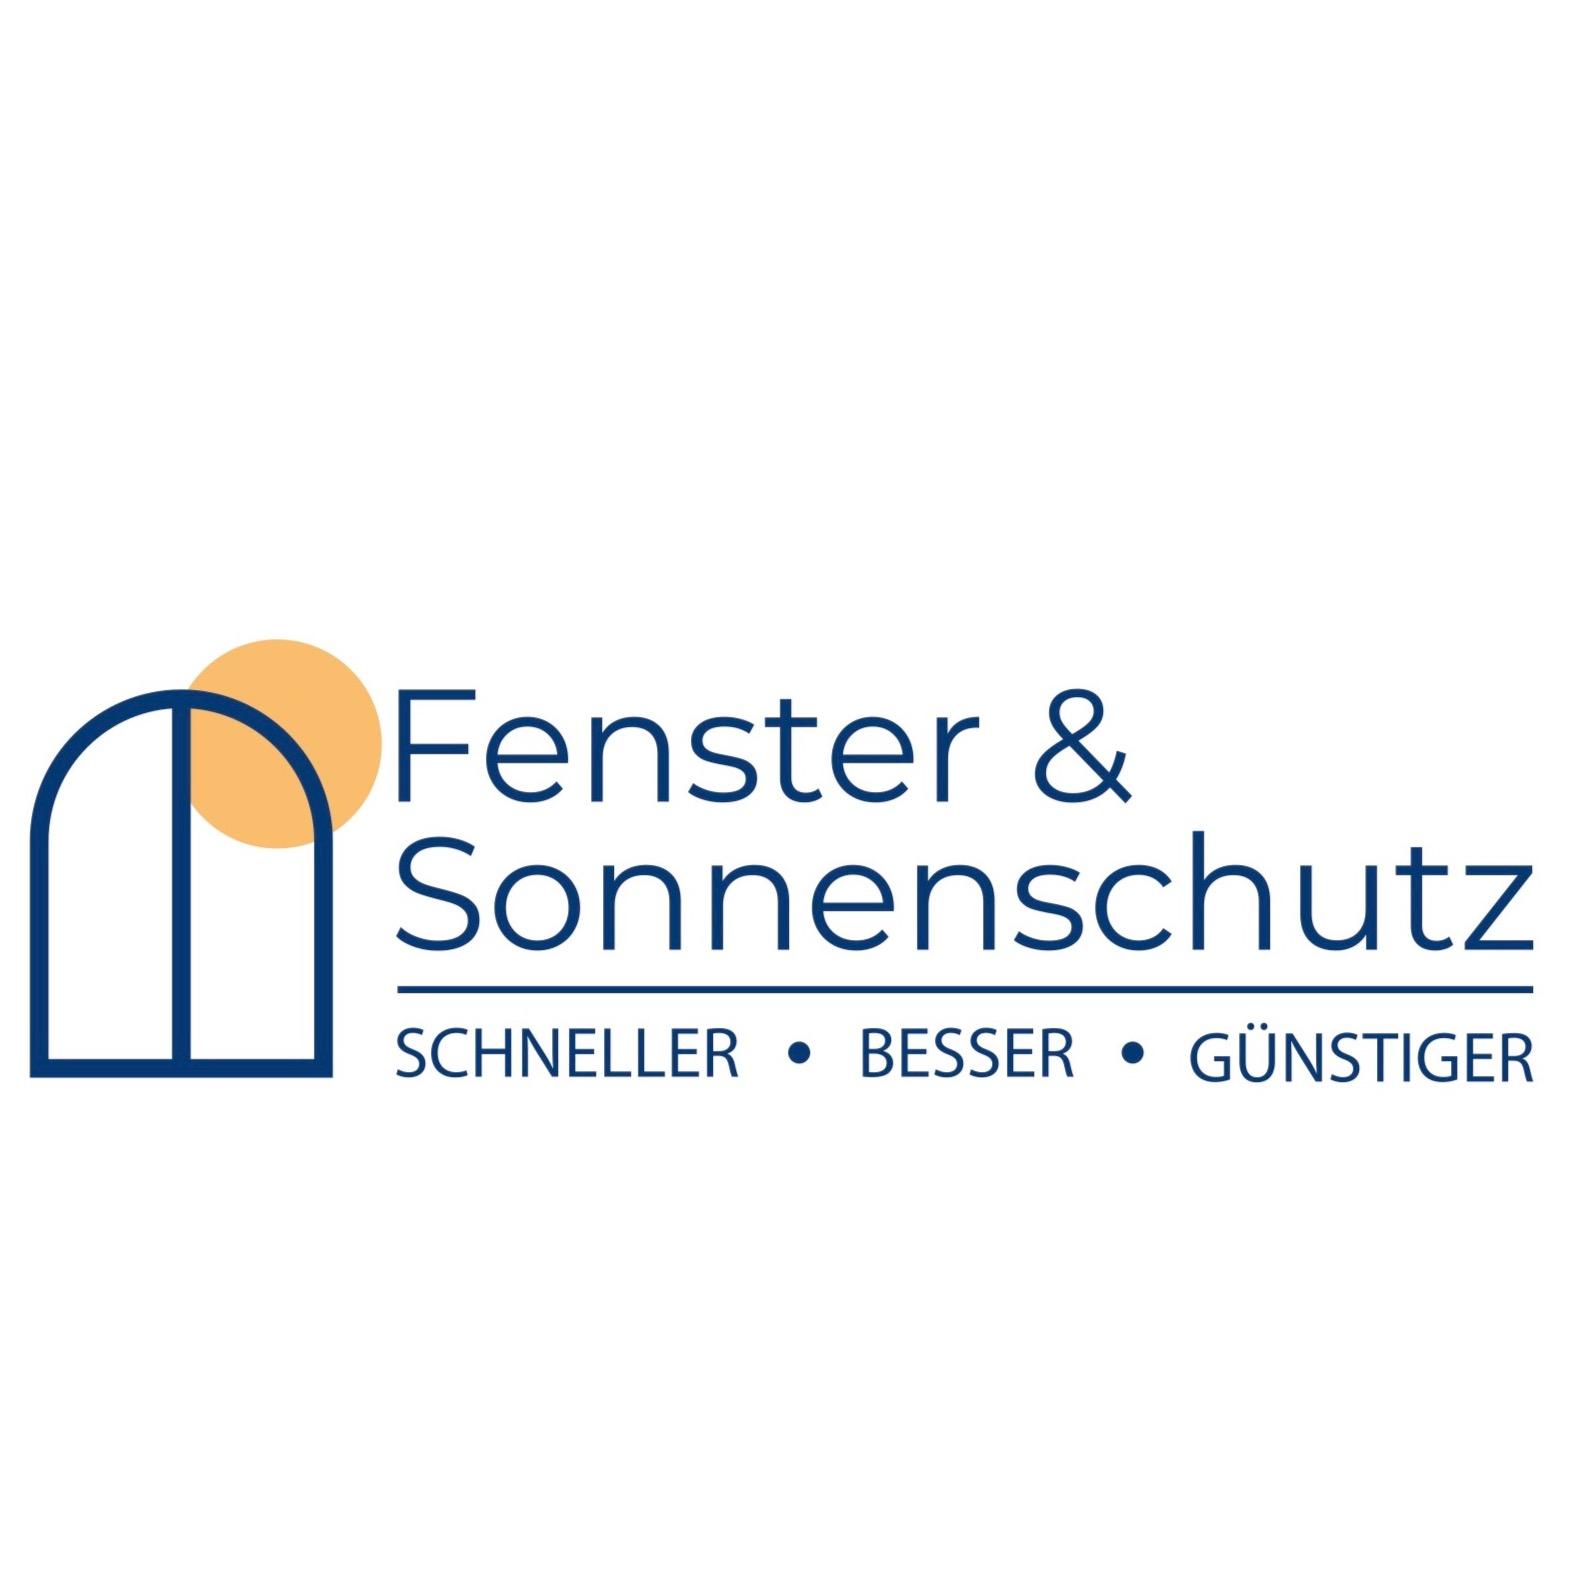 Fenster und Sonnenschutz in 5020 Salzburg Logo